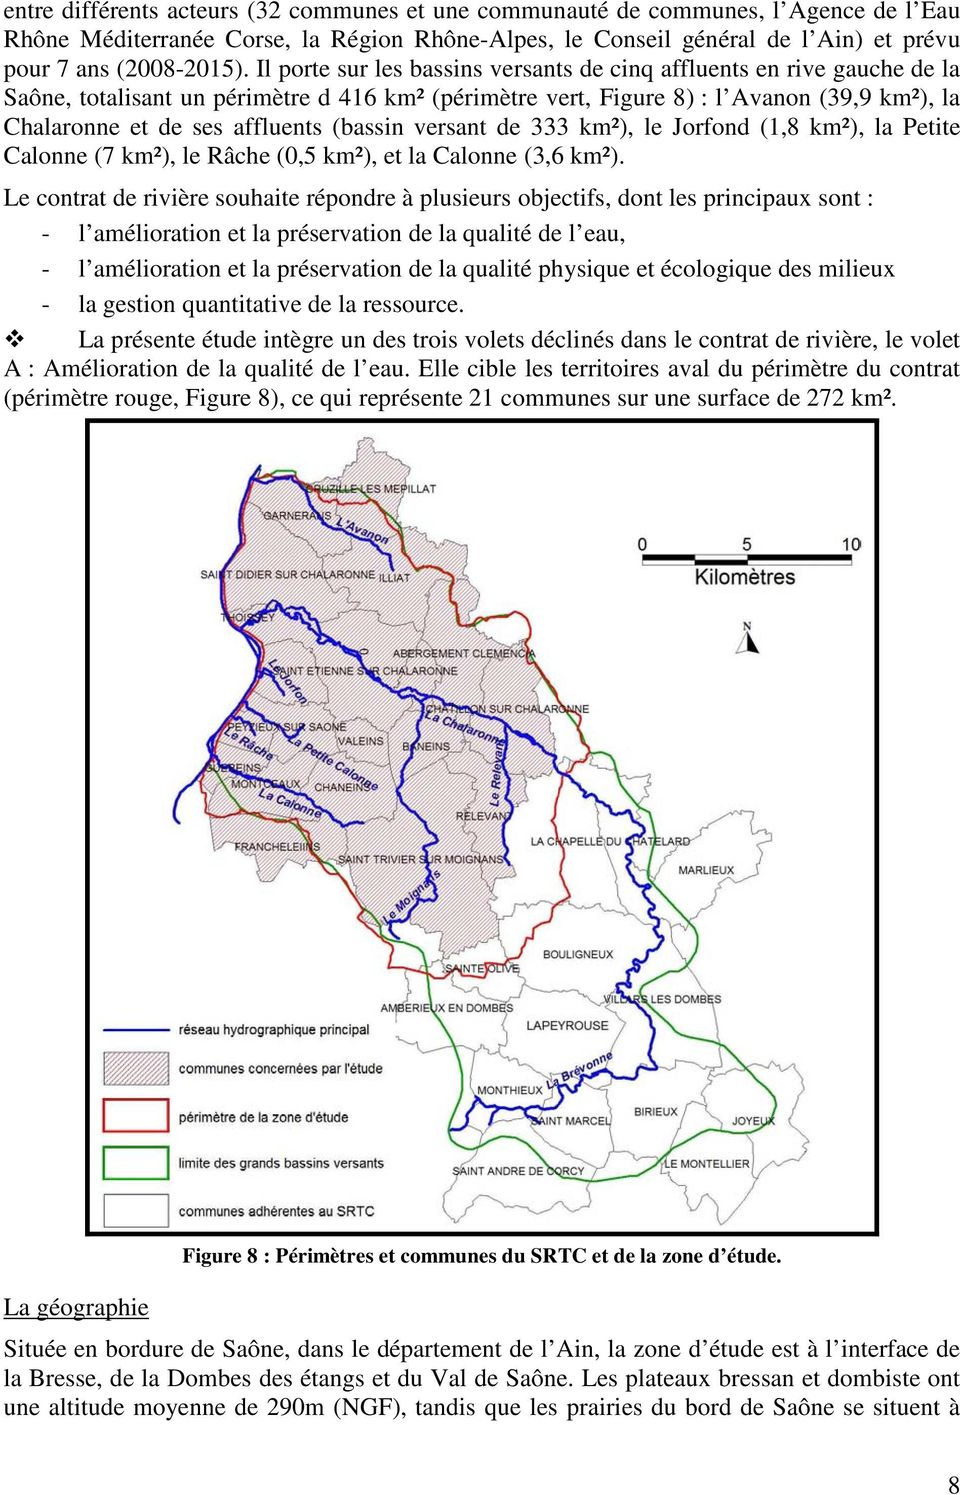 (bassin versant de 333 km²), le Jorfond (1,8 km²), la Petite Calonne (7 km²), le Râche (0,5 km²), et la Calonne (3,6 km²).